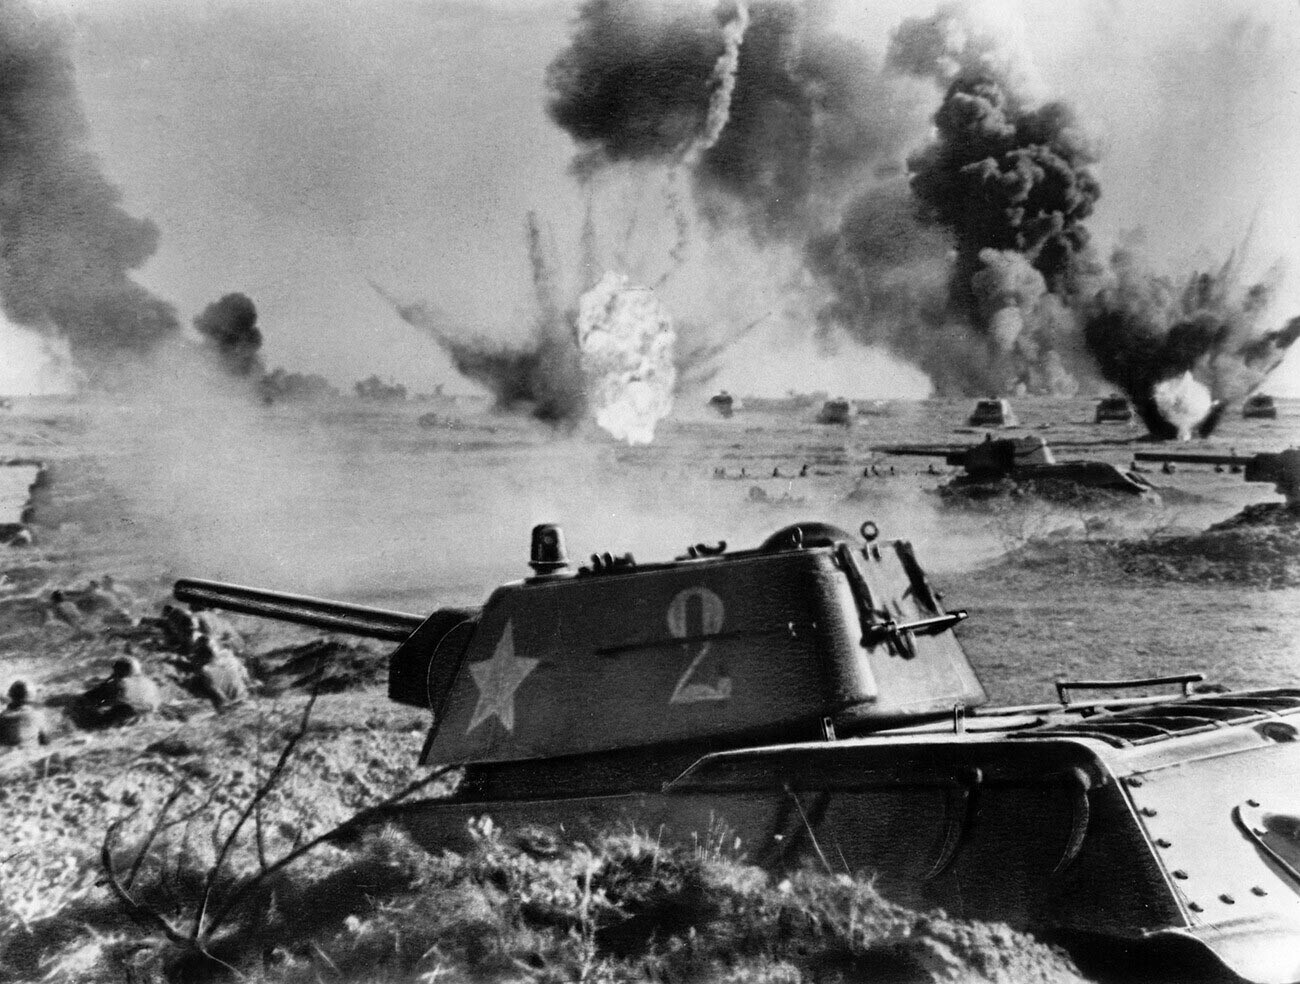 Bitka za Stalingrad, sovjetski tanki t-34 v bitki, 1942 ali 1943